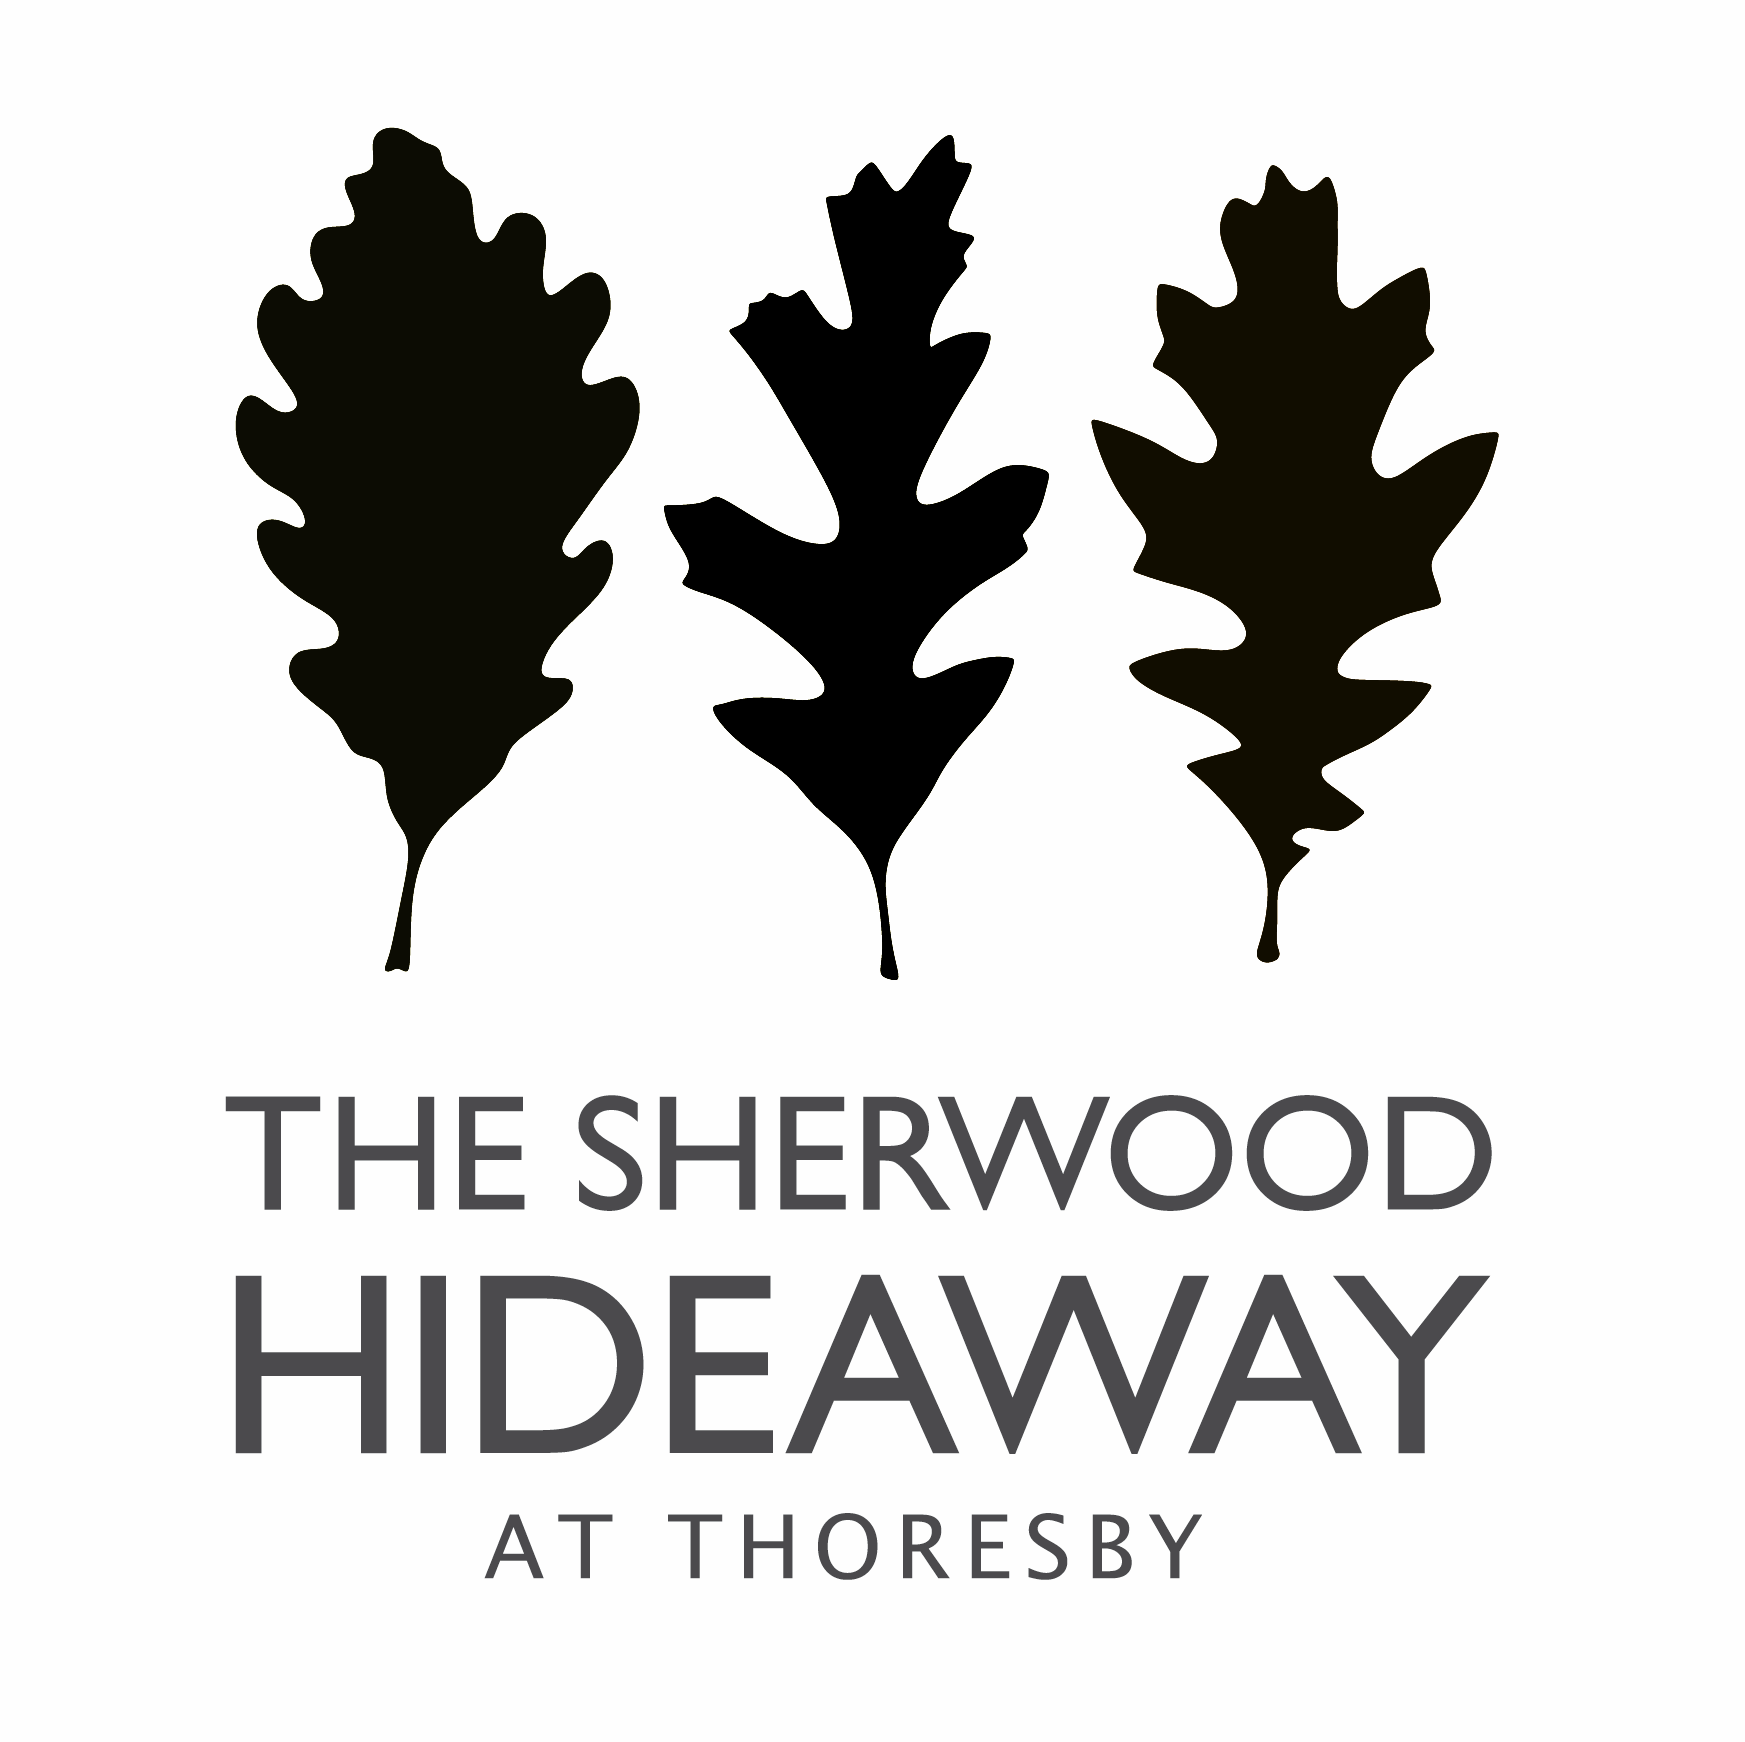 Sherwood hideaway